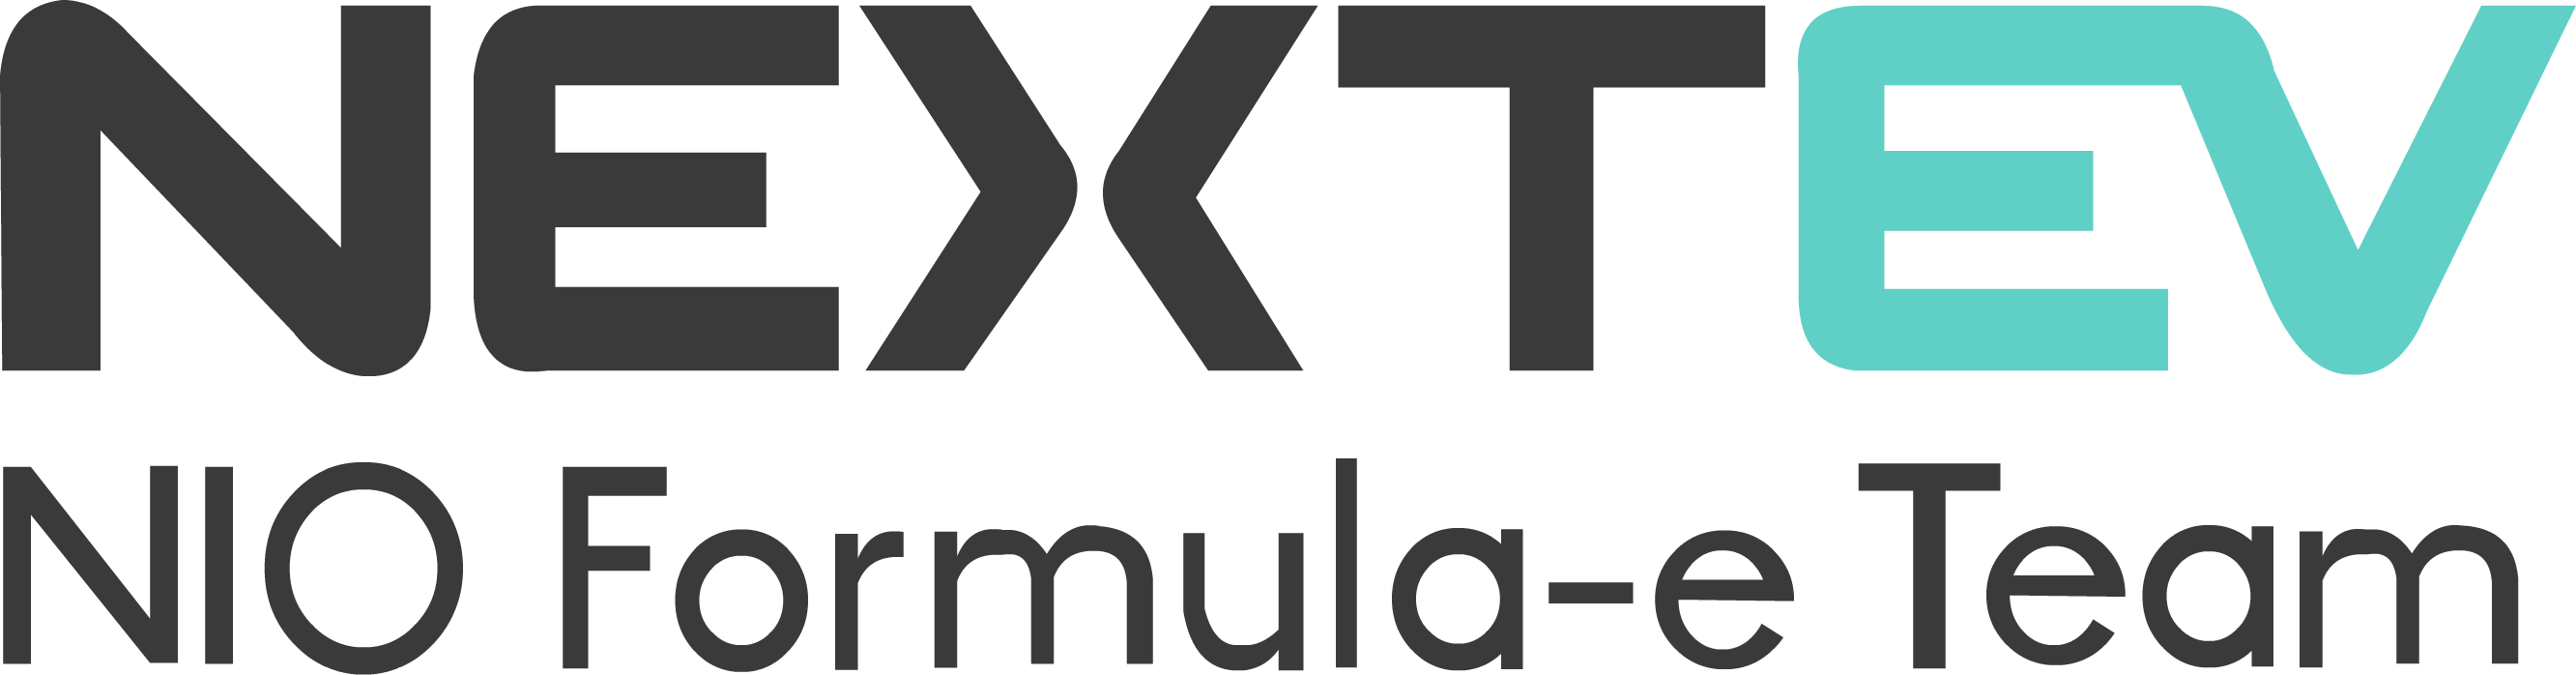 Nextev Logo - Tiedosto:NextEV NIO.png